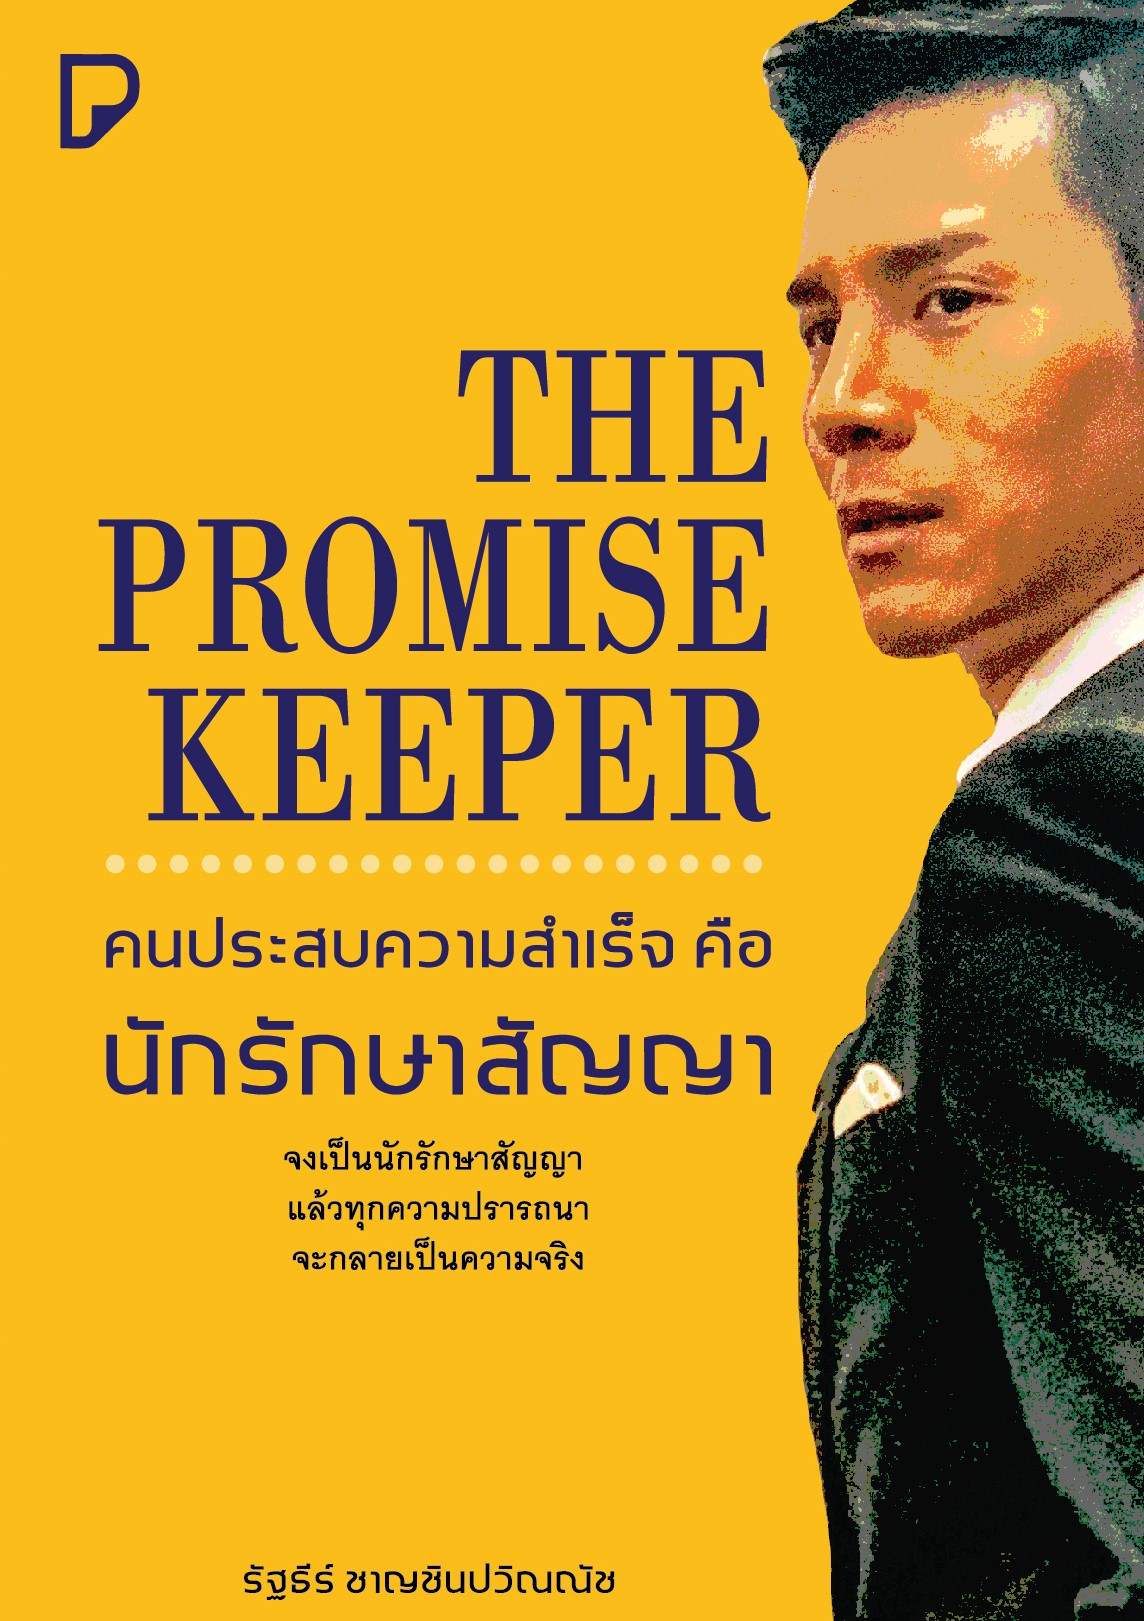 The Promise Keeper คนประสบความสำเร็จต้องเป็นนักรักษาสัญญา / รัฐธีร์ ชาญชินปวิณณัช (สนพ.บริษัท พิมพ์ทวีคูณ จำกัด) / ใหม่.html